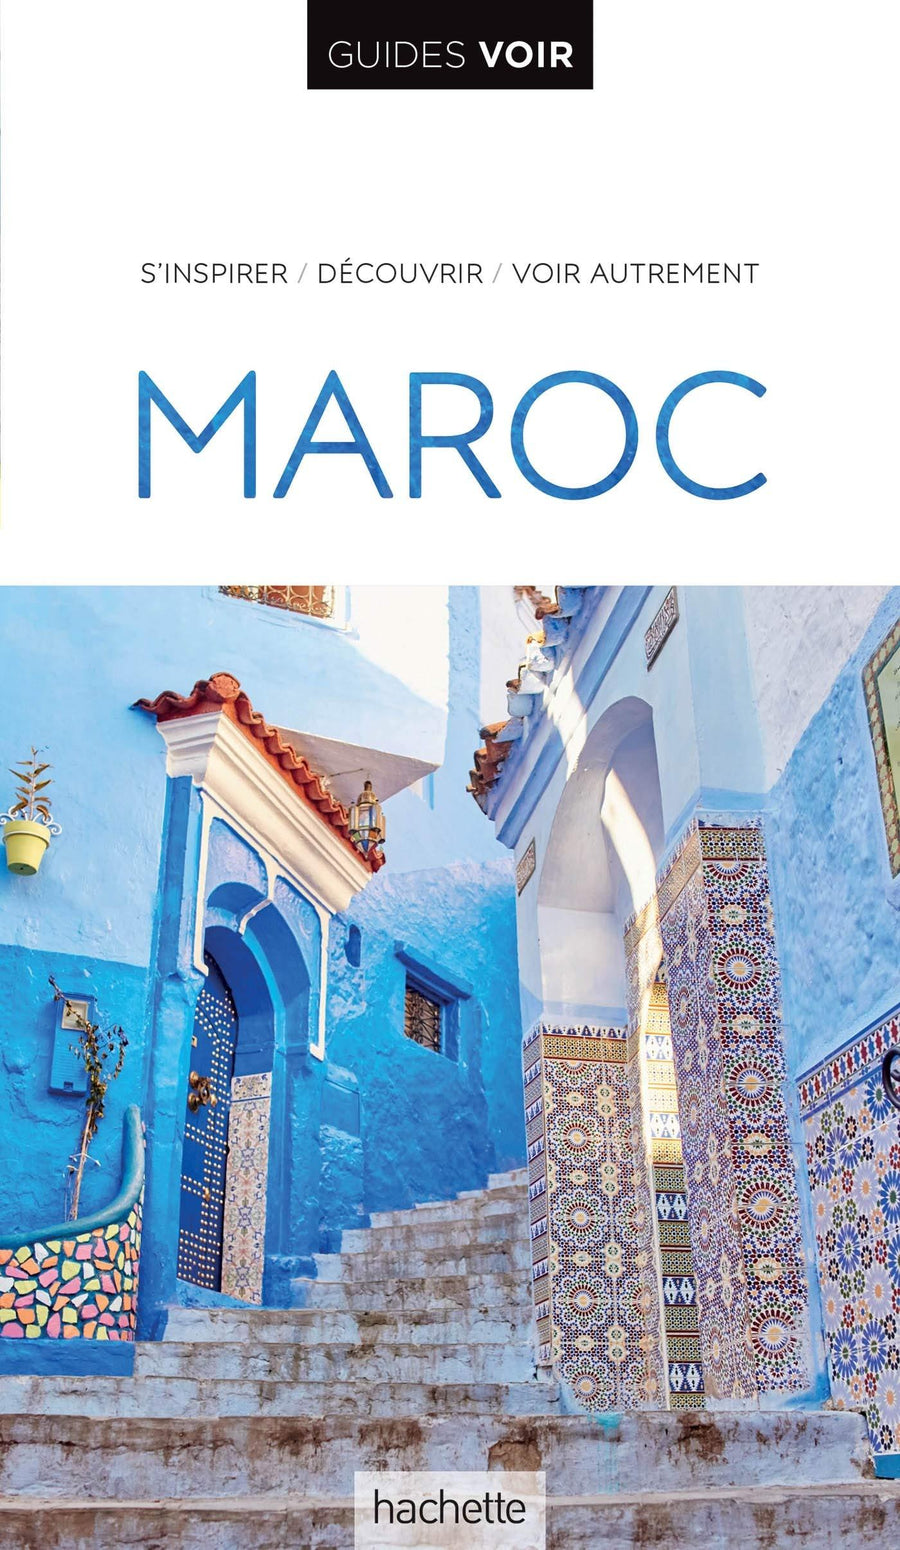 Guide de voyage - Maroc - Édition 2021 | Guides Voir guide de voyage Guides Voir 